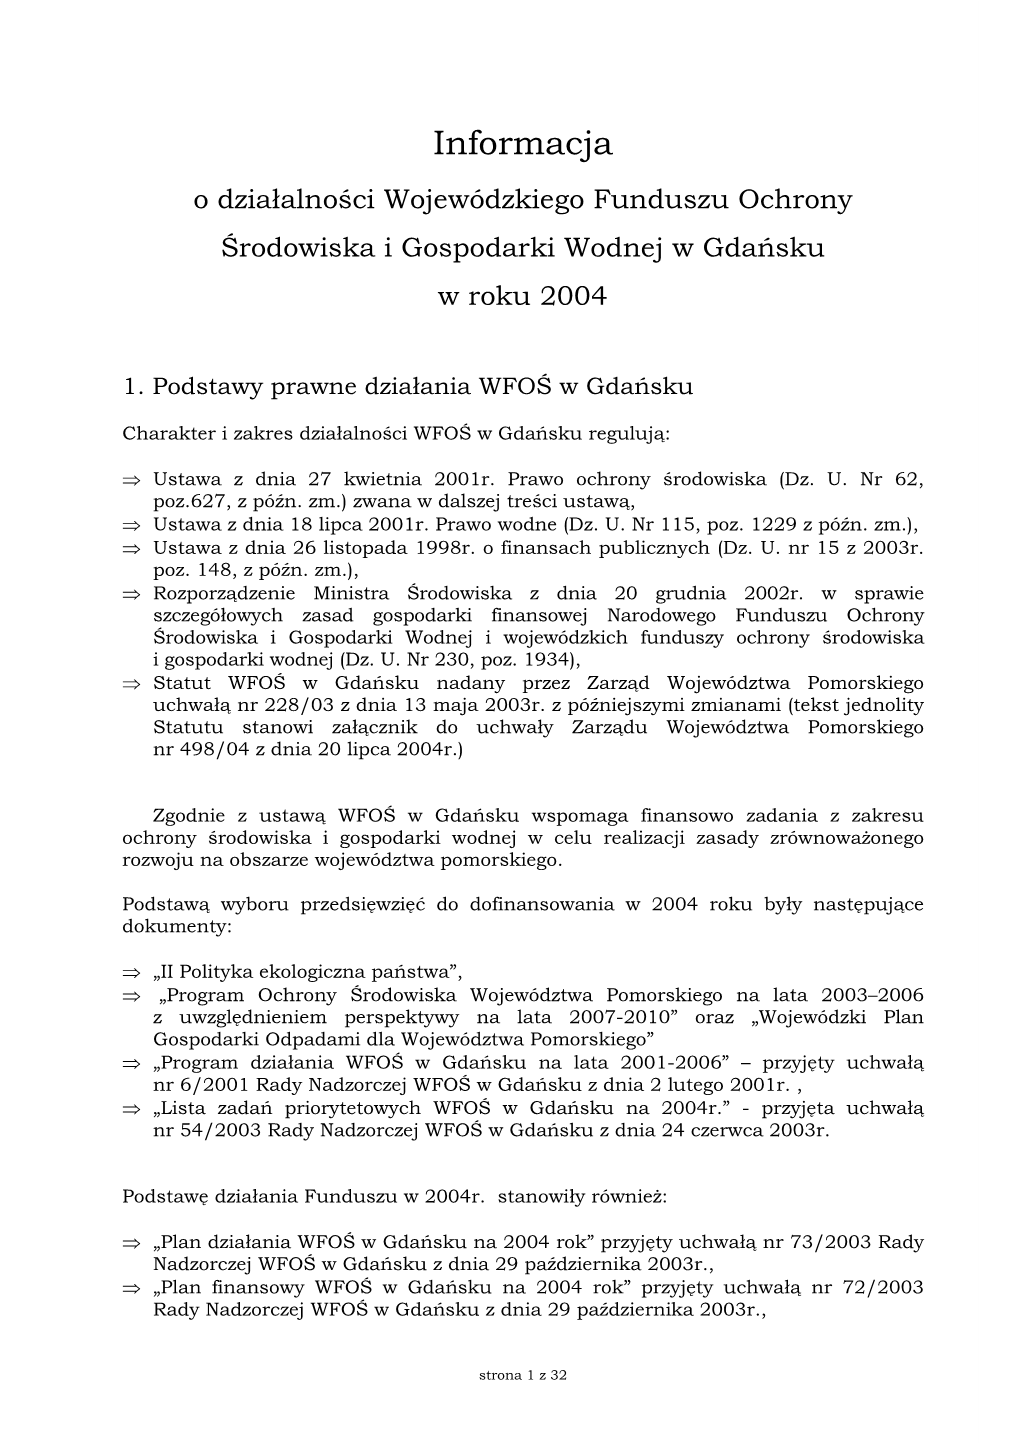 Informacja O Działalności WFOŚ W Gdańsku W 2004 Roku